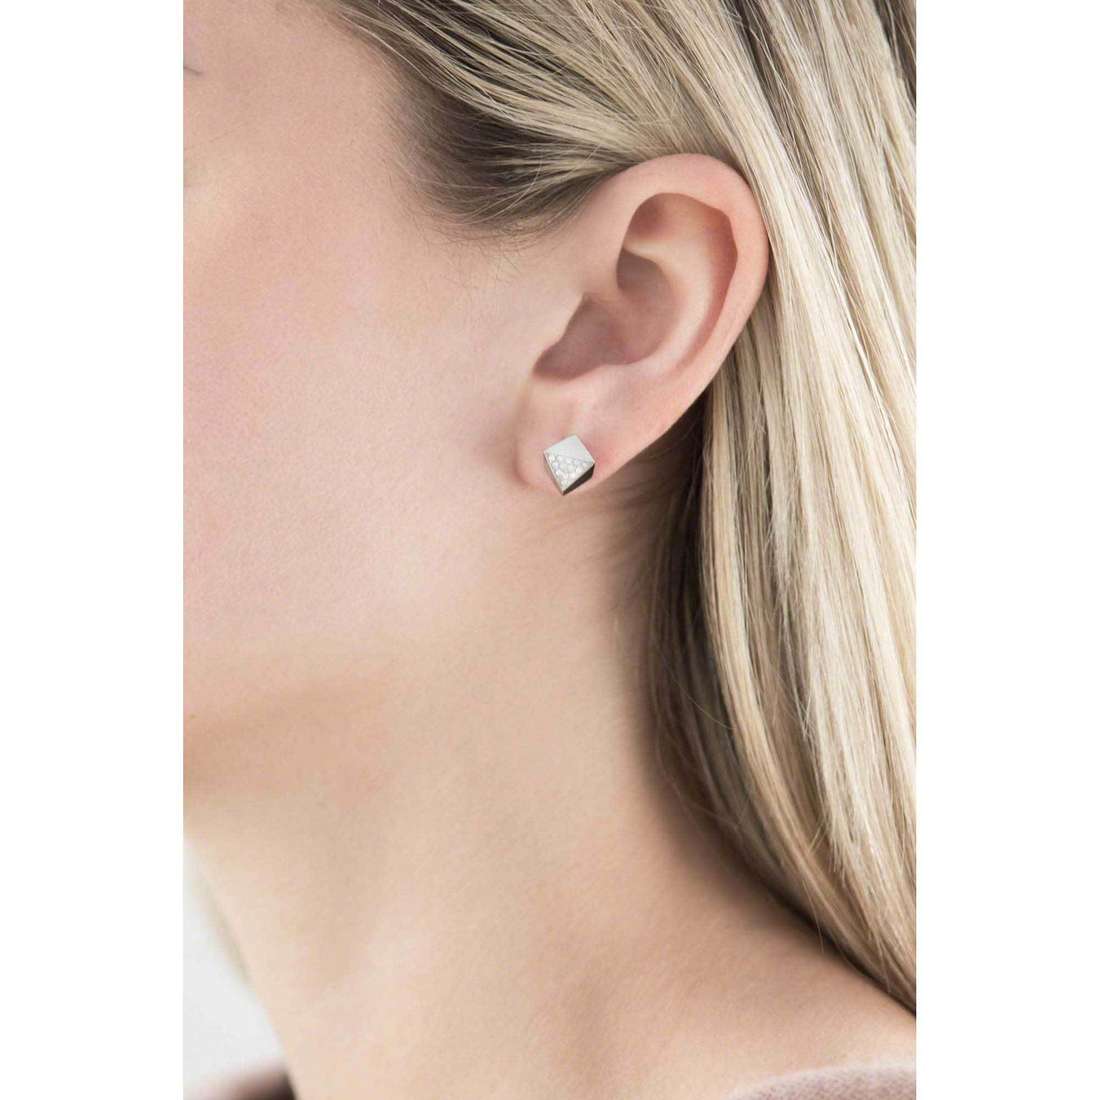 Fossil earrings Fall 15 woman JF01990040 wearing